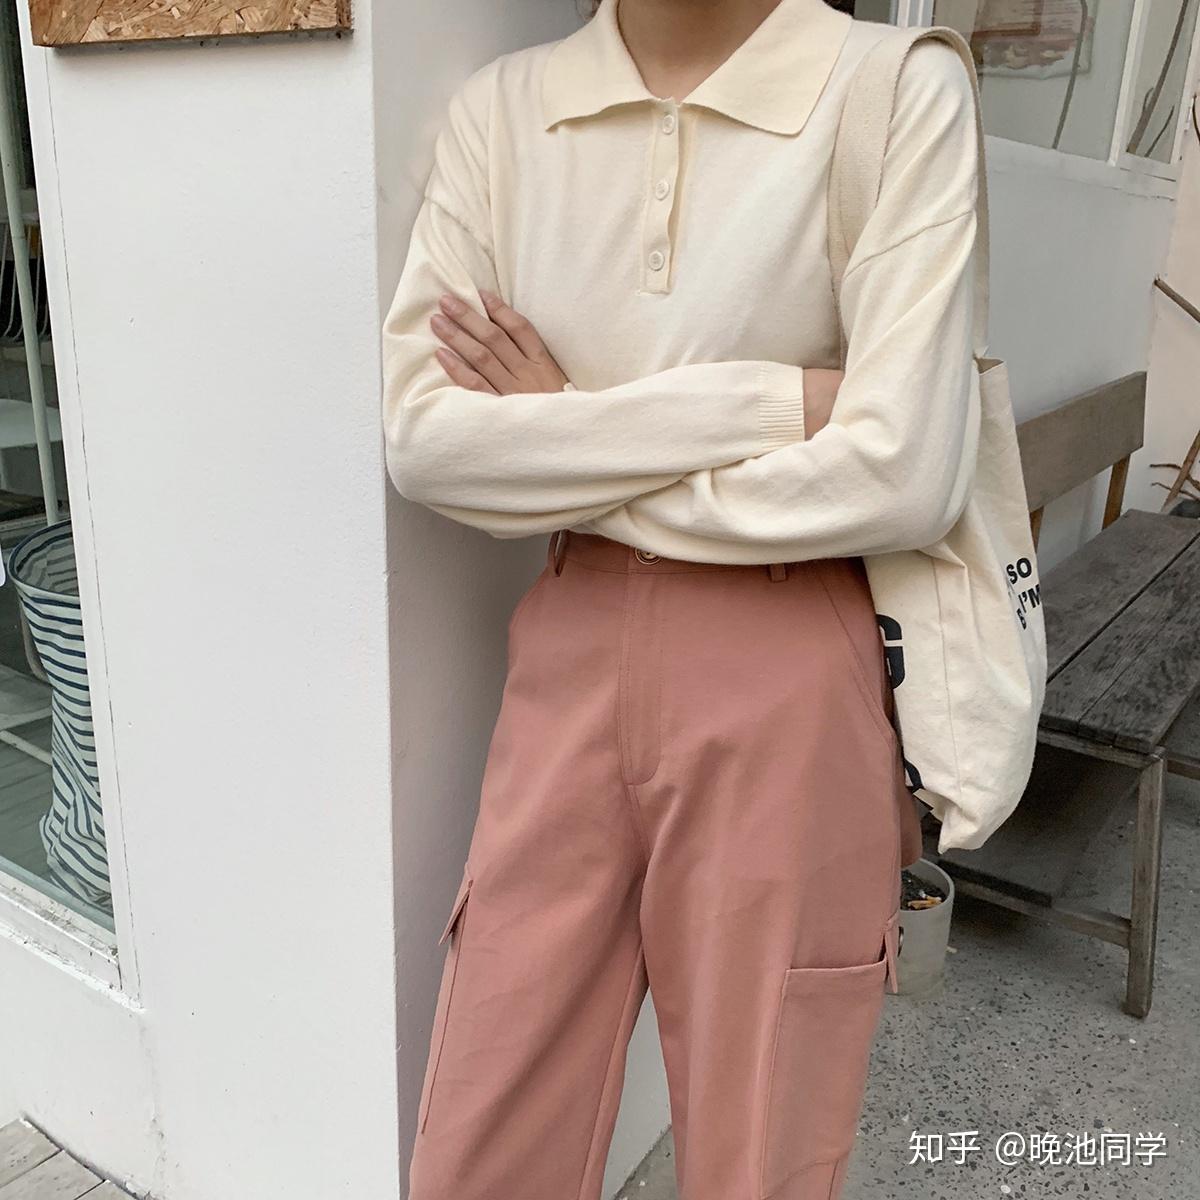 毛晓彤粉红衬衣橘黄连衣裙优雅写真 - 哔哩哔哩